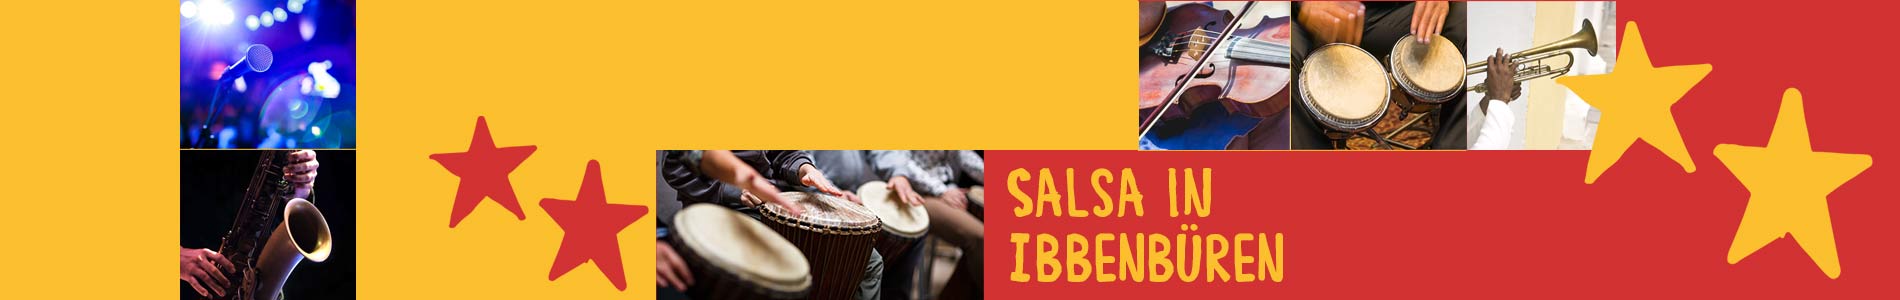 Salsa in Büren – Salsa lernen und tanzen, Tanzkurse, Partys, Veranstaltungen